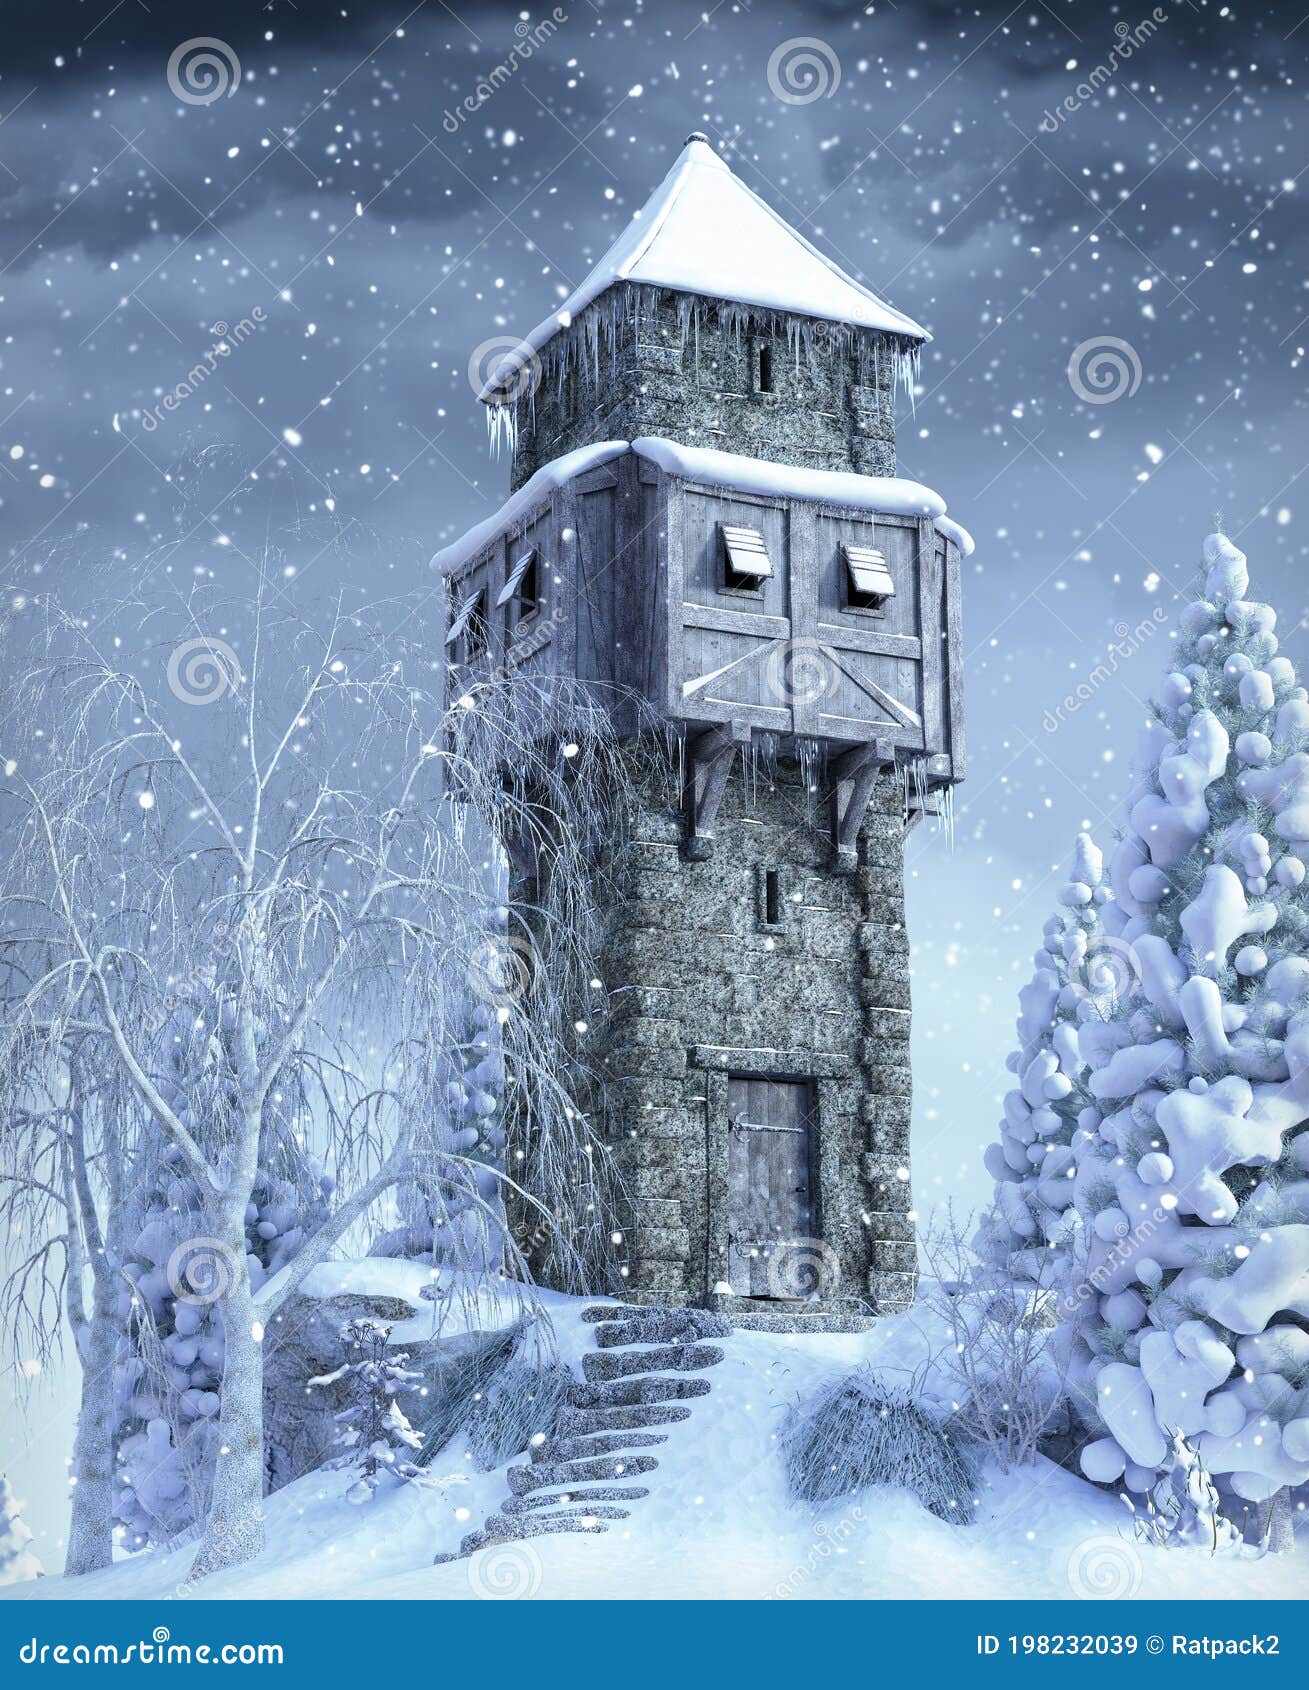 O Jogo dos Tronos - Rocken Karstark Old-stone-watch-medieval-tower-snow-covered-winter-landscape-d-render-198232039